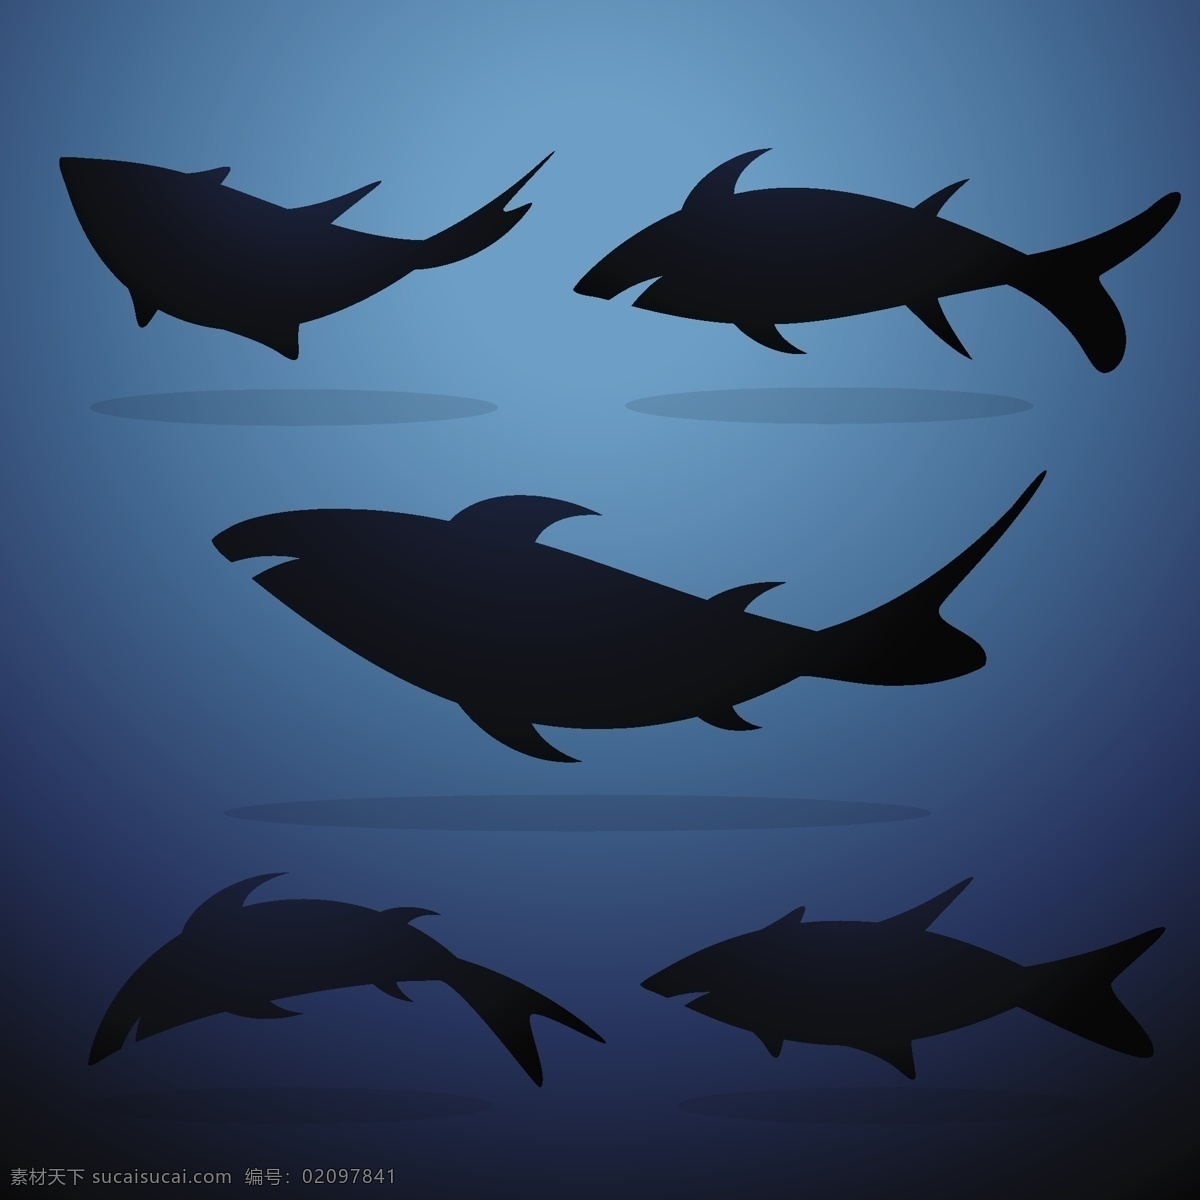 鲨鱼 剪 影集 矢量 海 危险 潜水 鱼类 野生动物 水 动物 剪影 轮廓 形状 背景壁纸